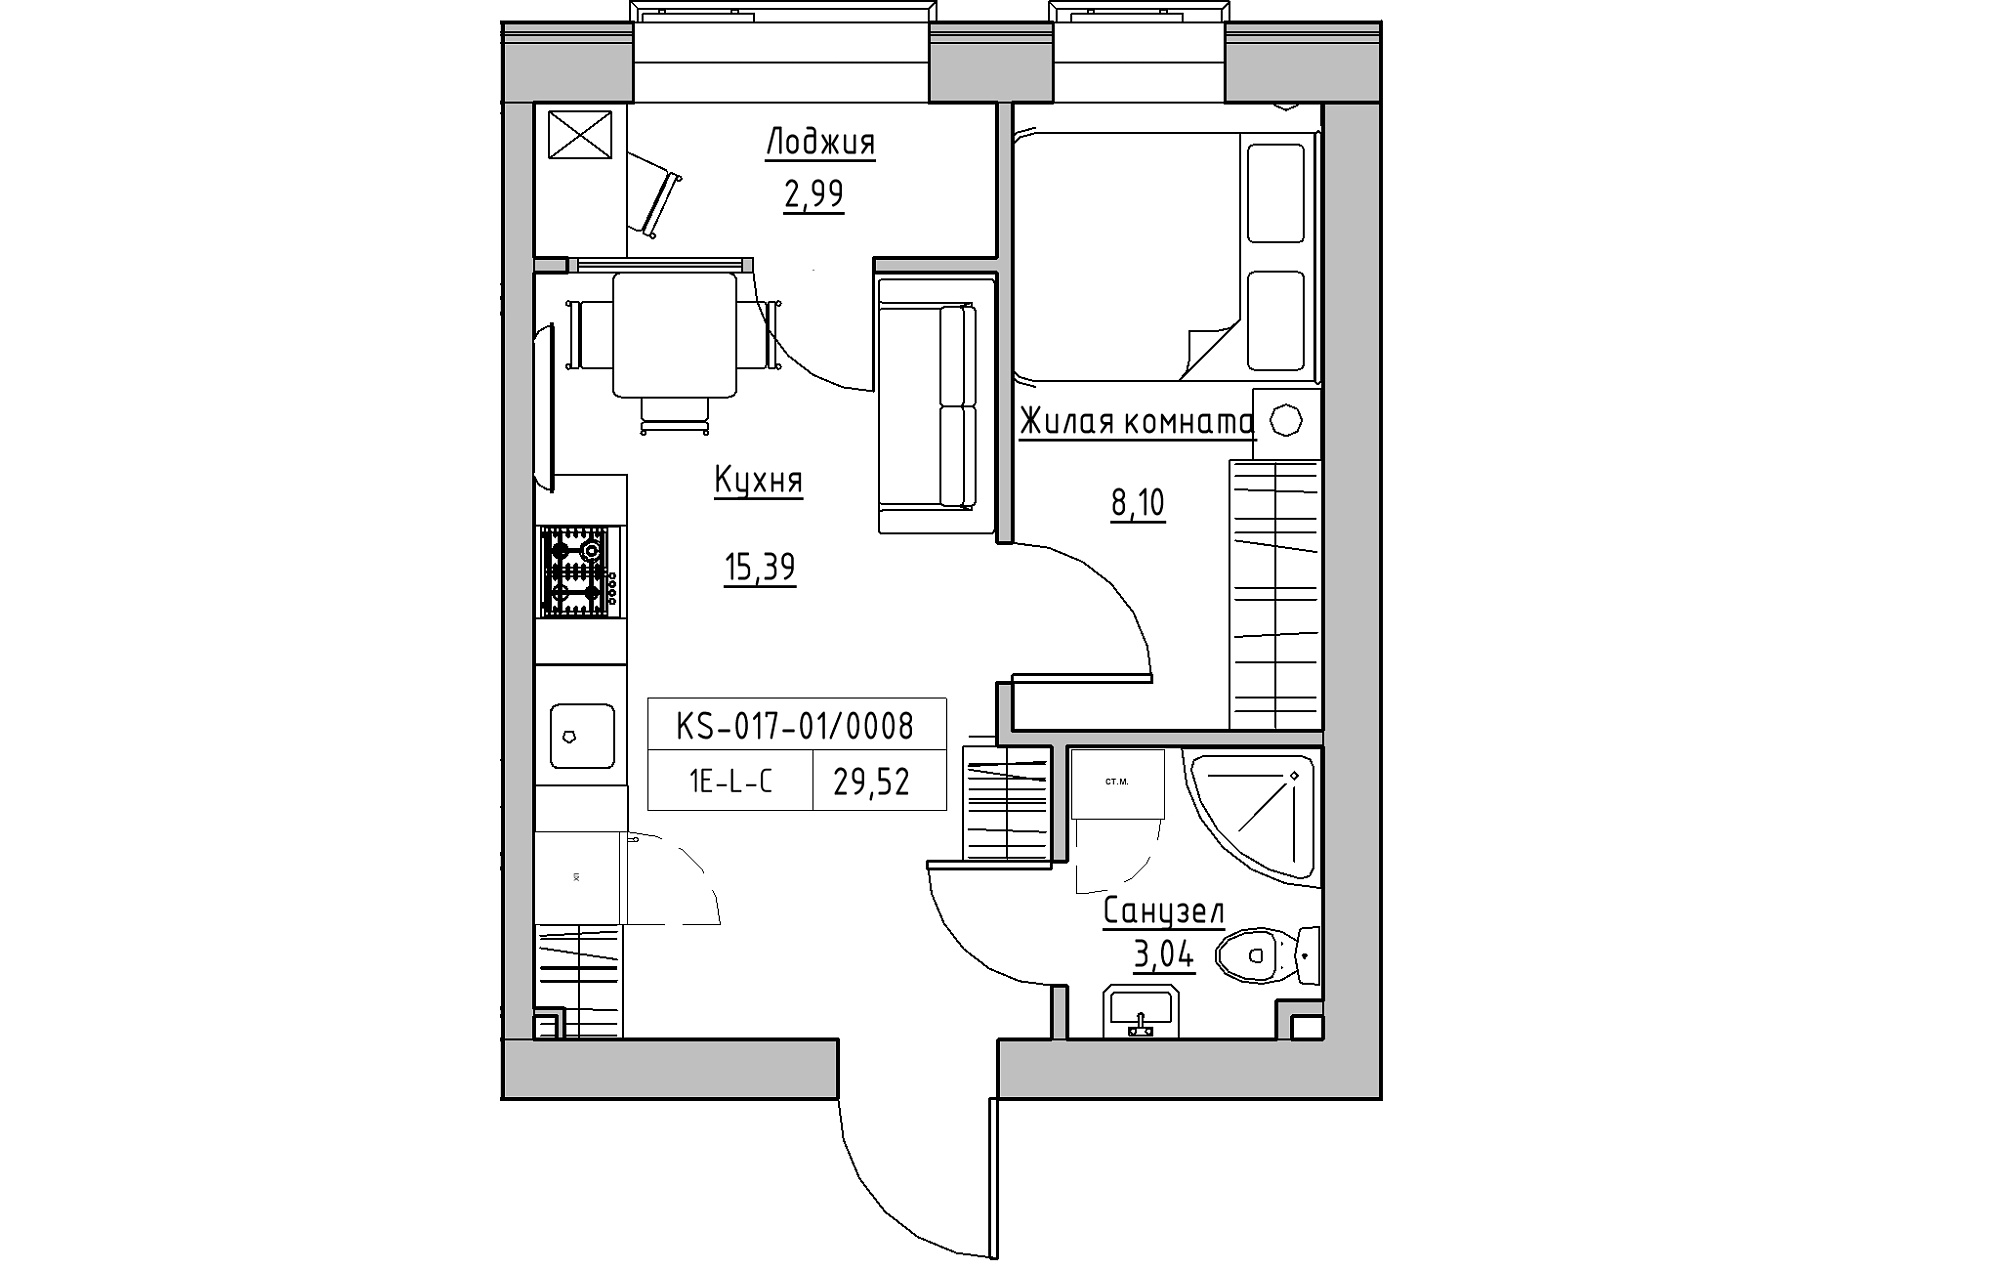 Планировка 1-к квартира площей 29.52м2, KS-017-01/0008.